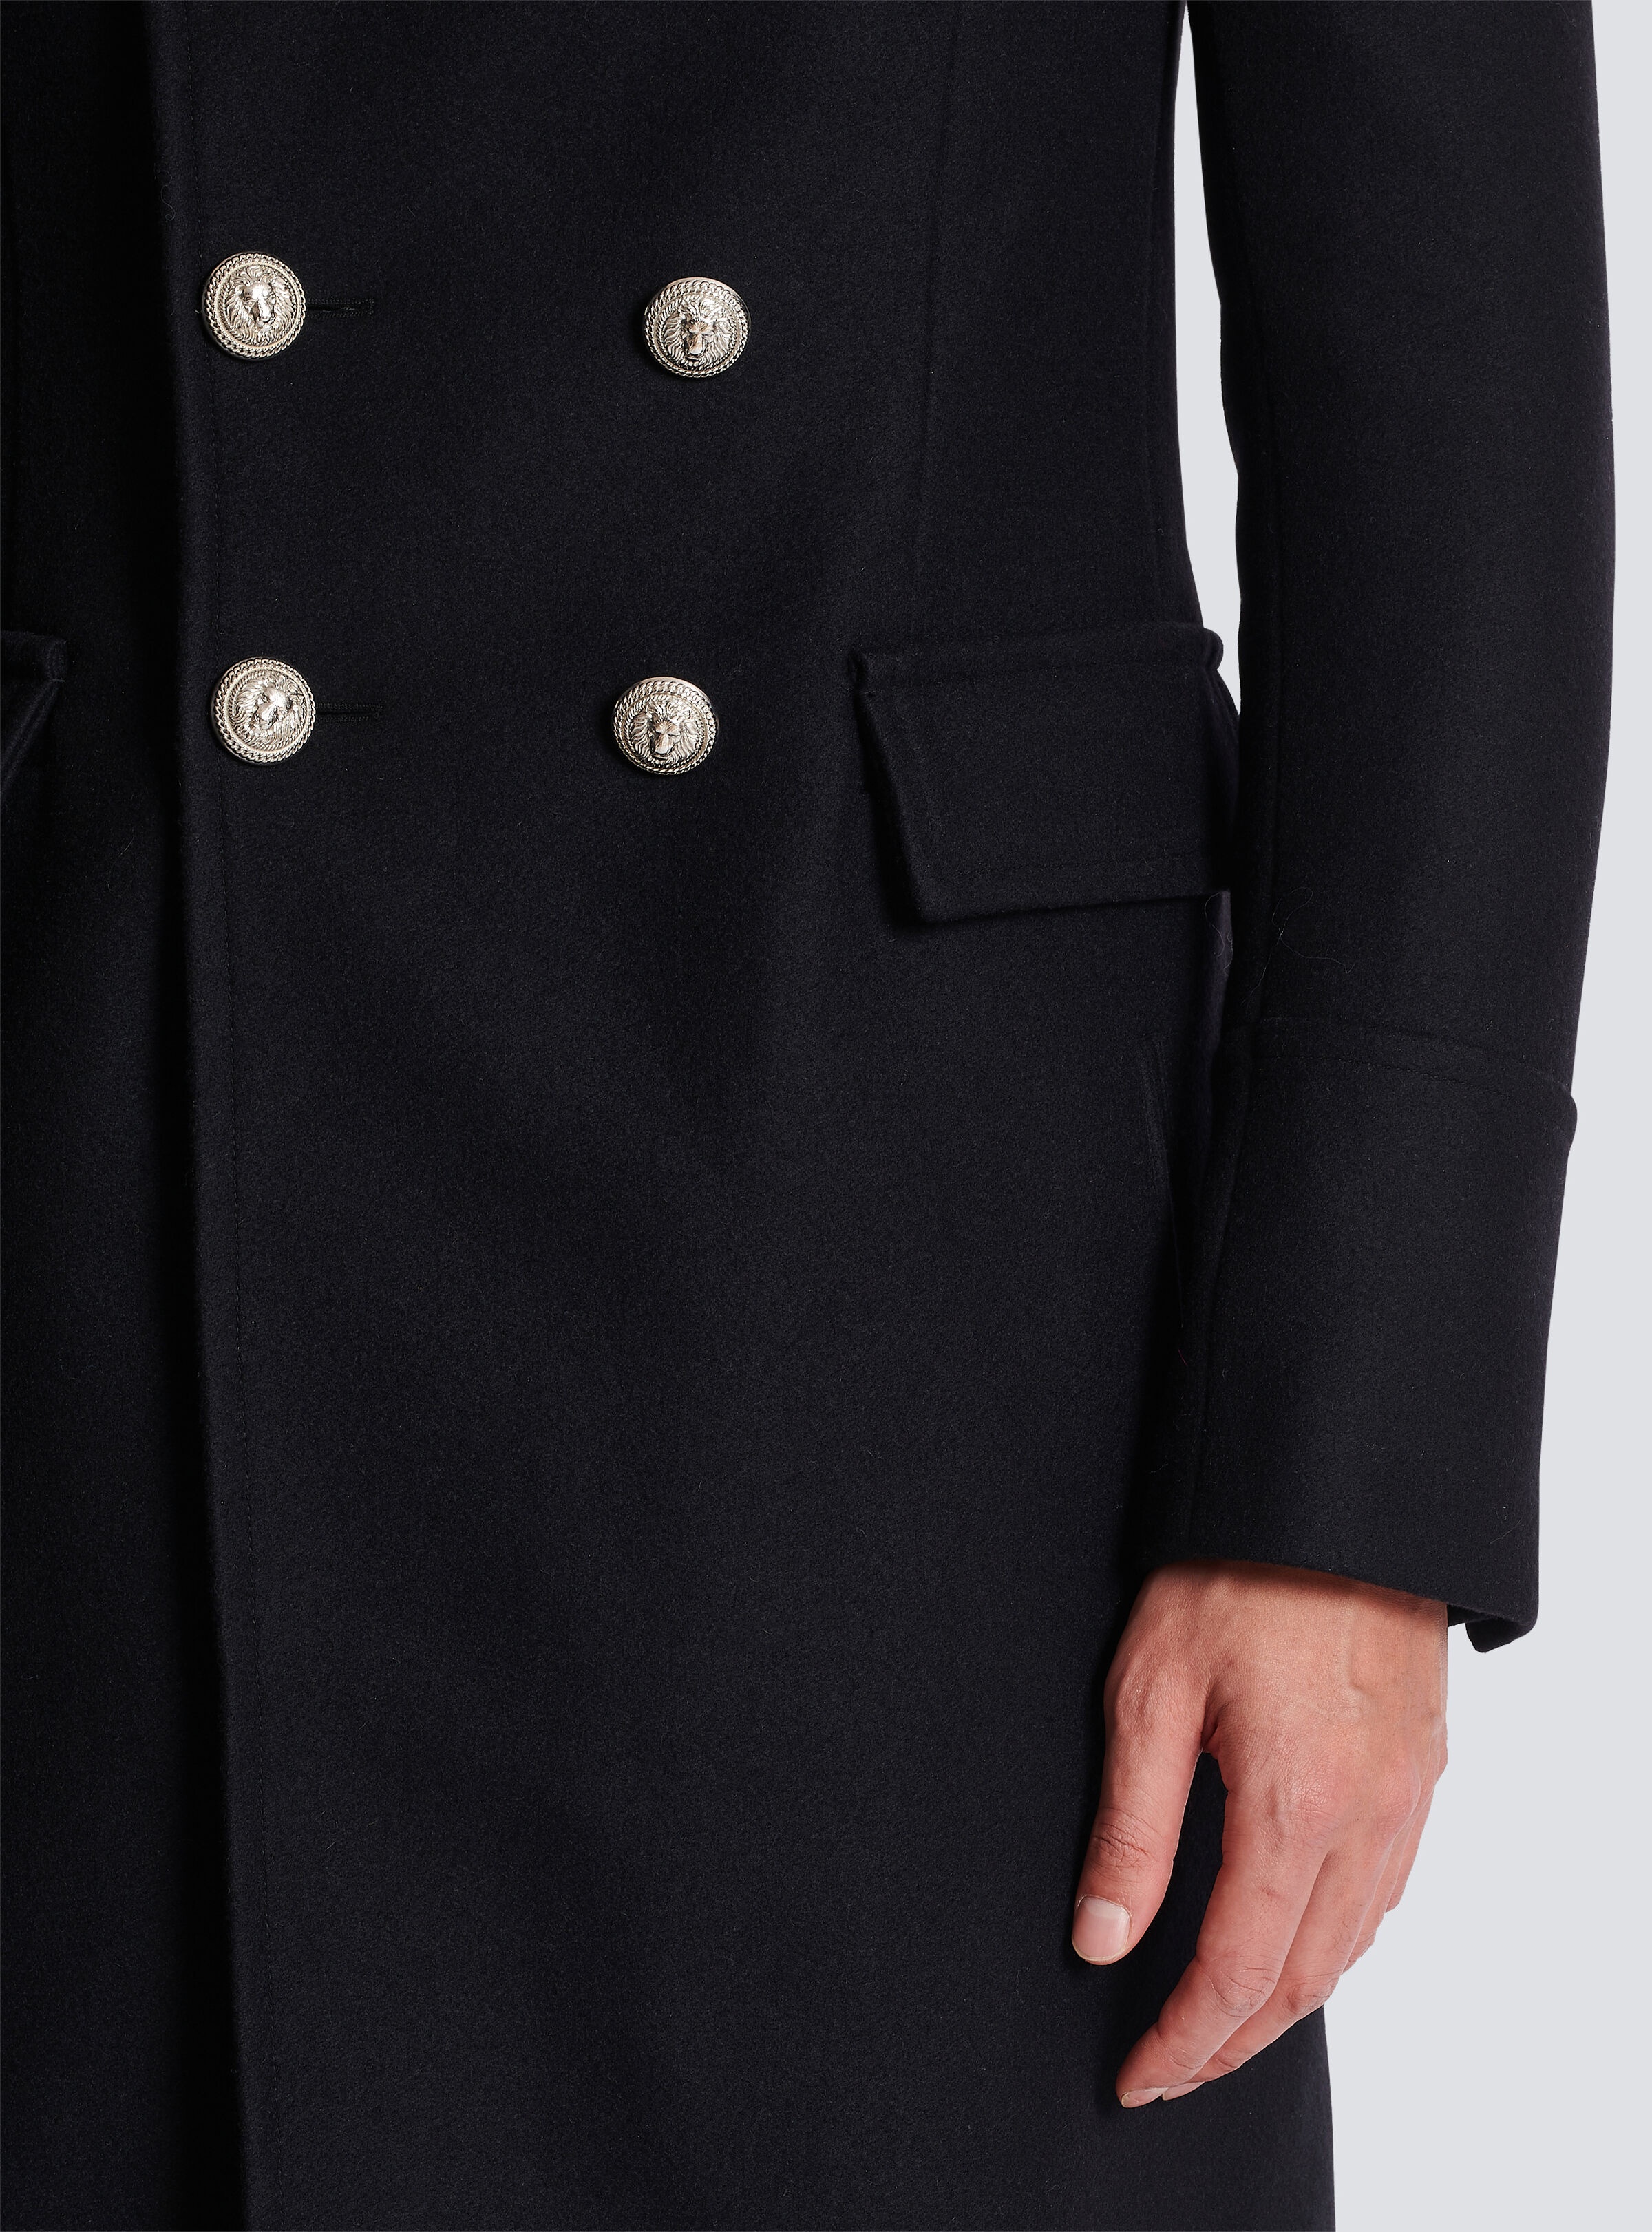 Balmain Long Wool Military Style Coat